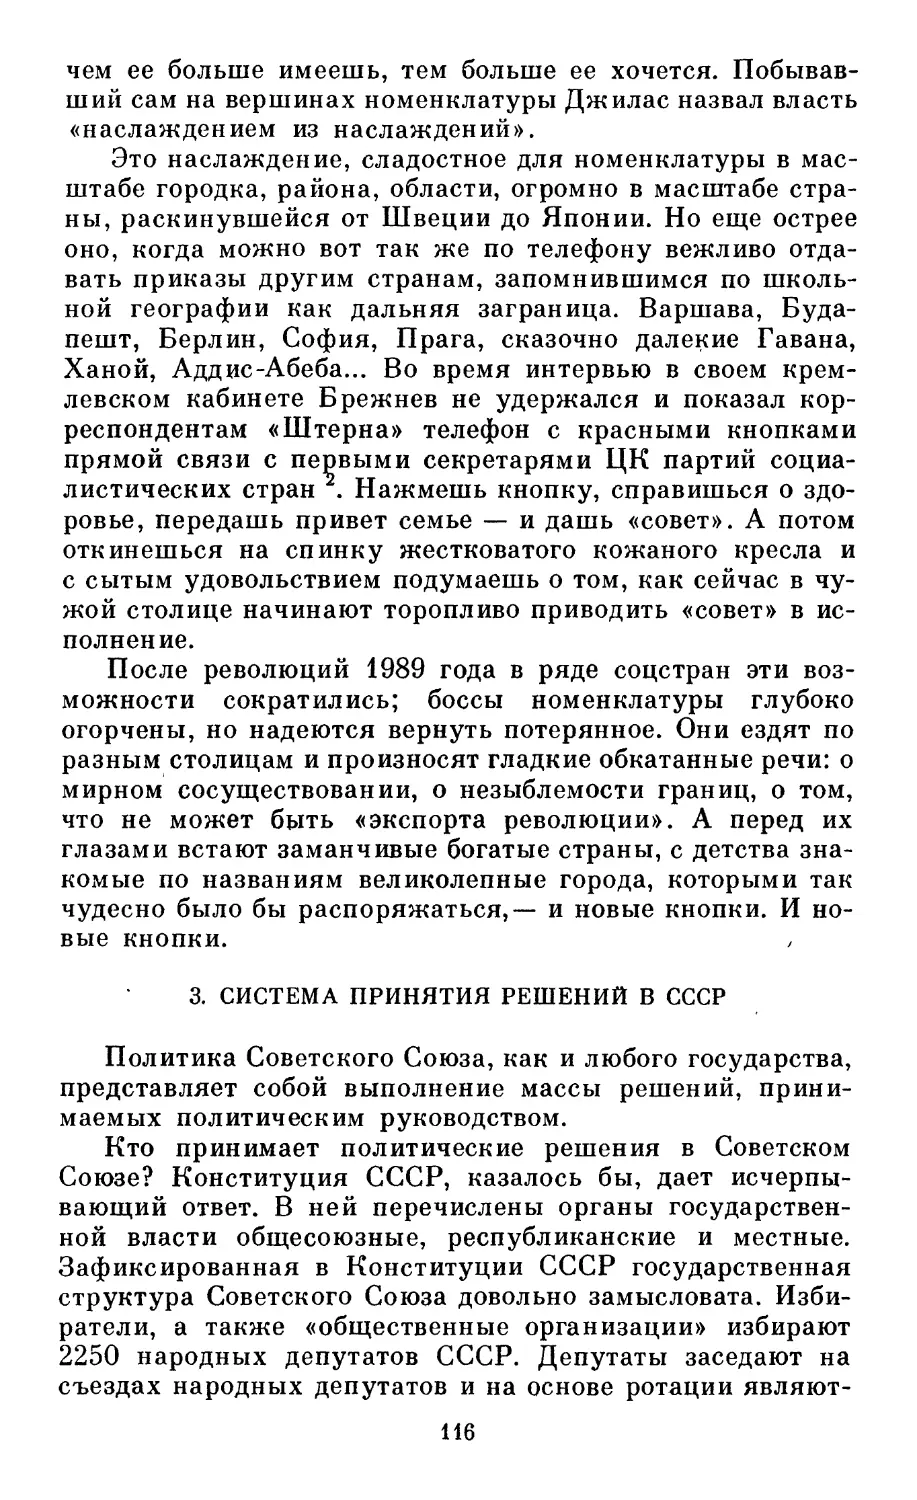 3. Система принятия решений в СССР